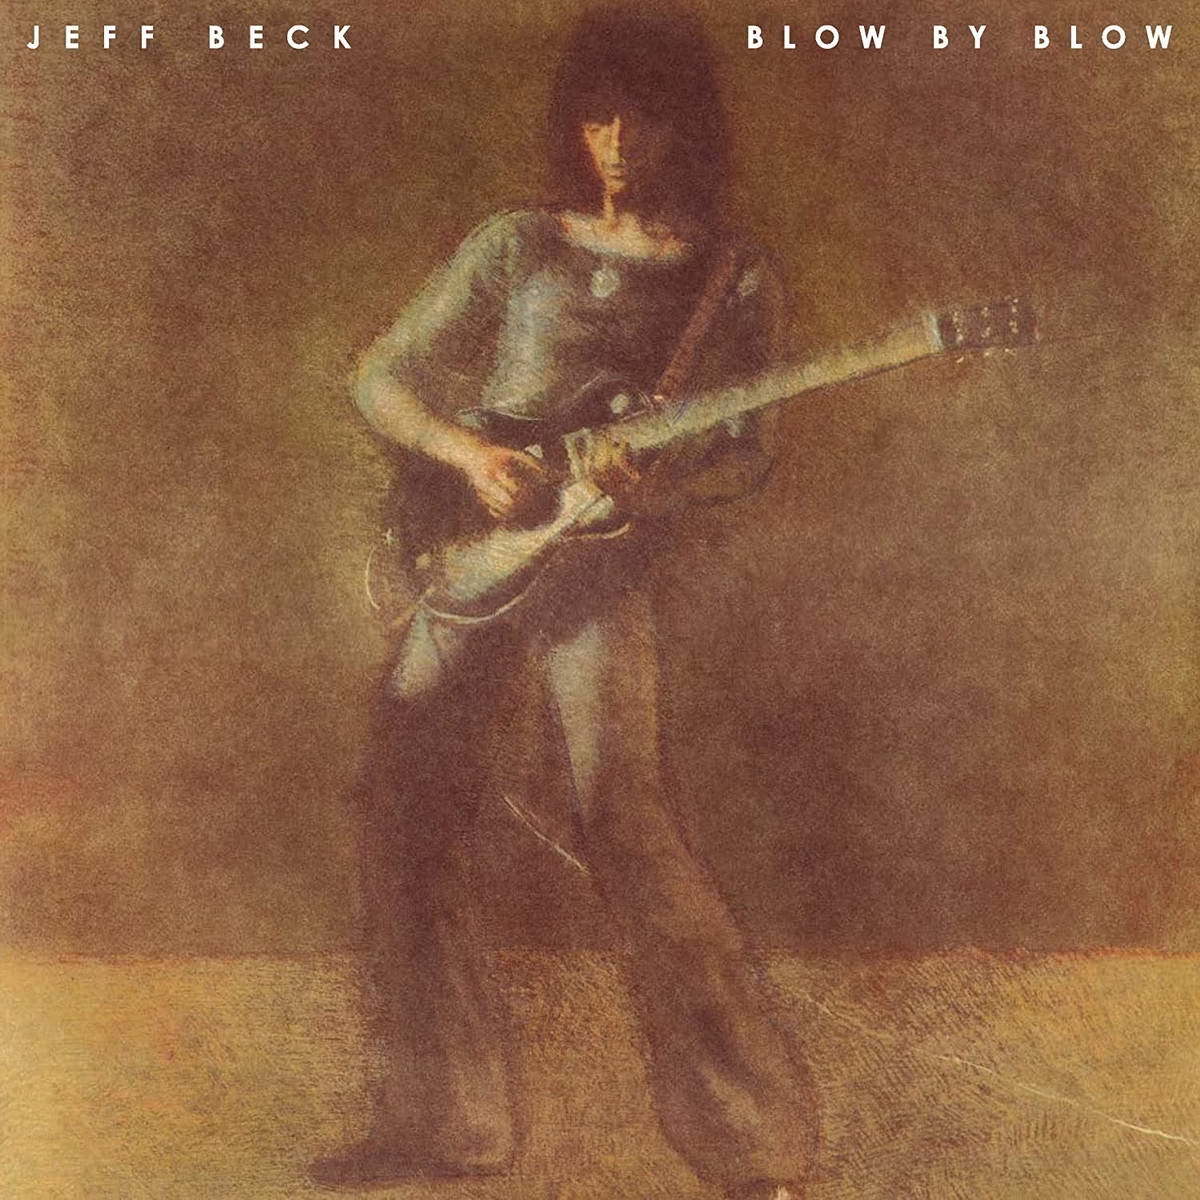 Виниловая пластинка Beck, Jeff, Blow By Blow (0886977455513) виниловая пластинка jeff beck – blow by blow orange lp